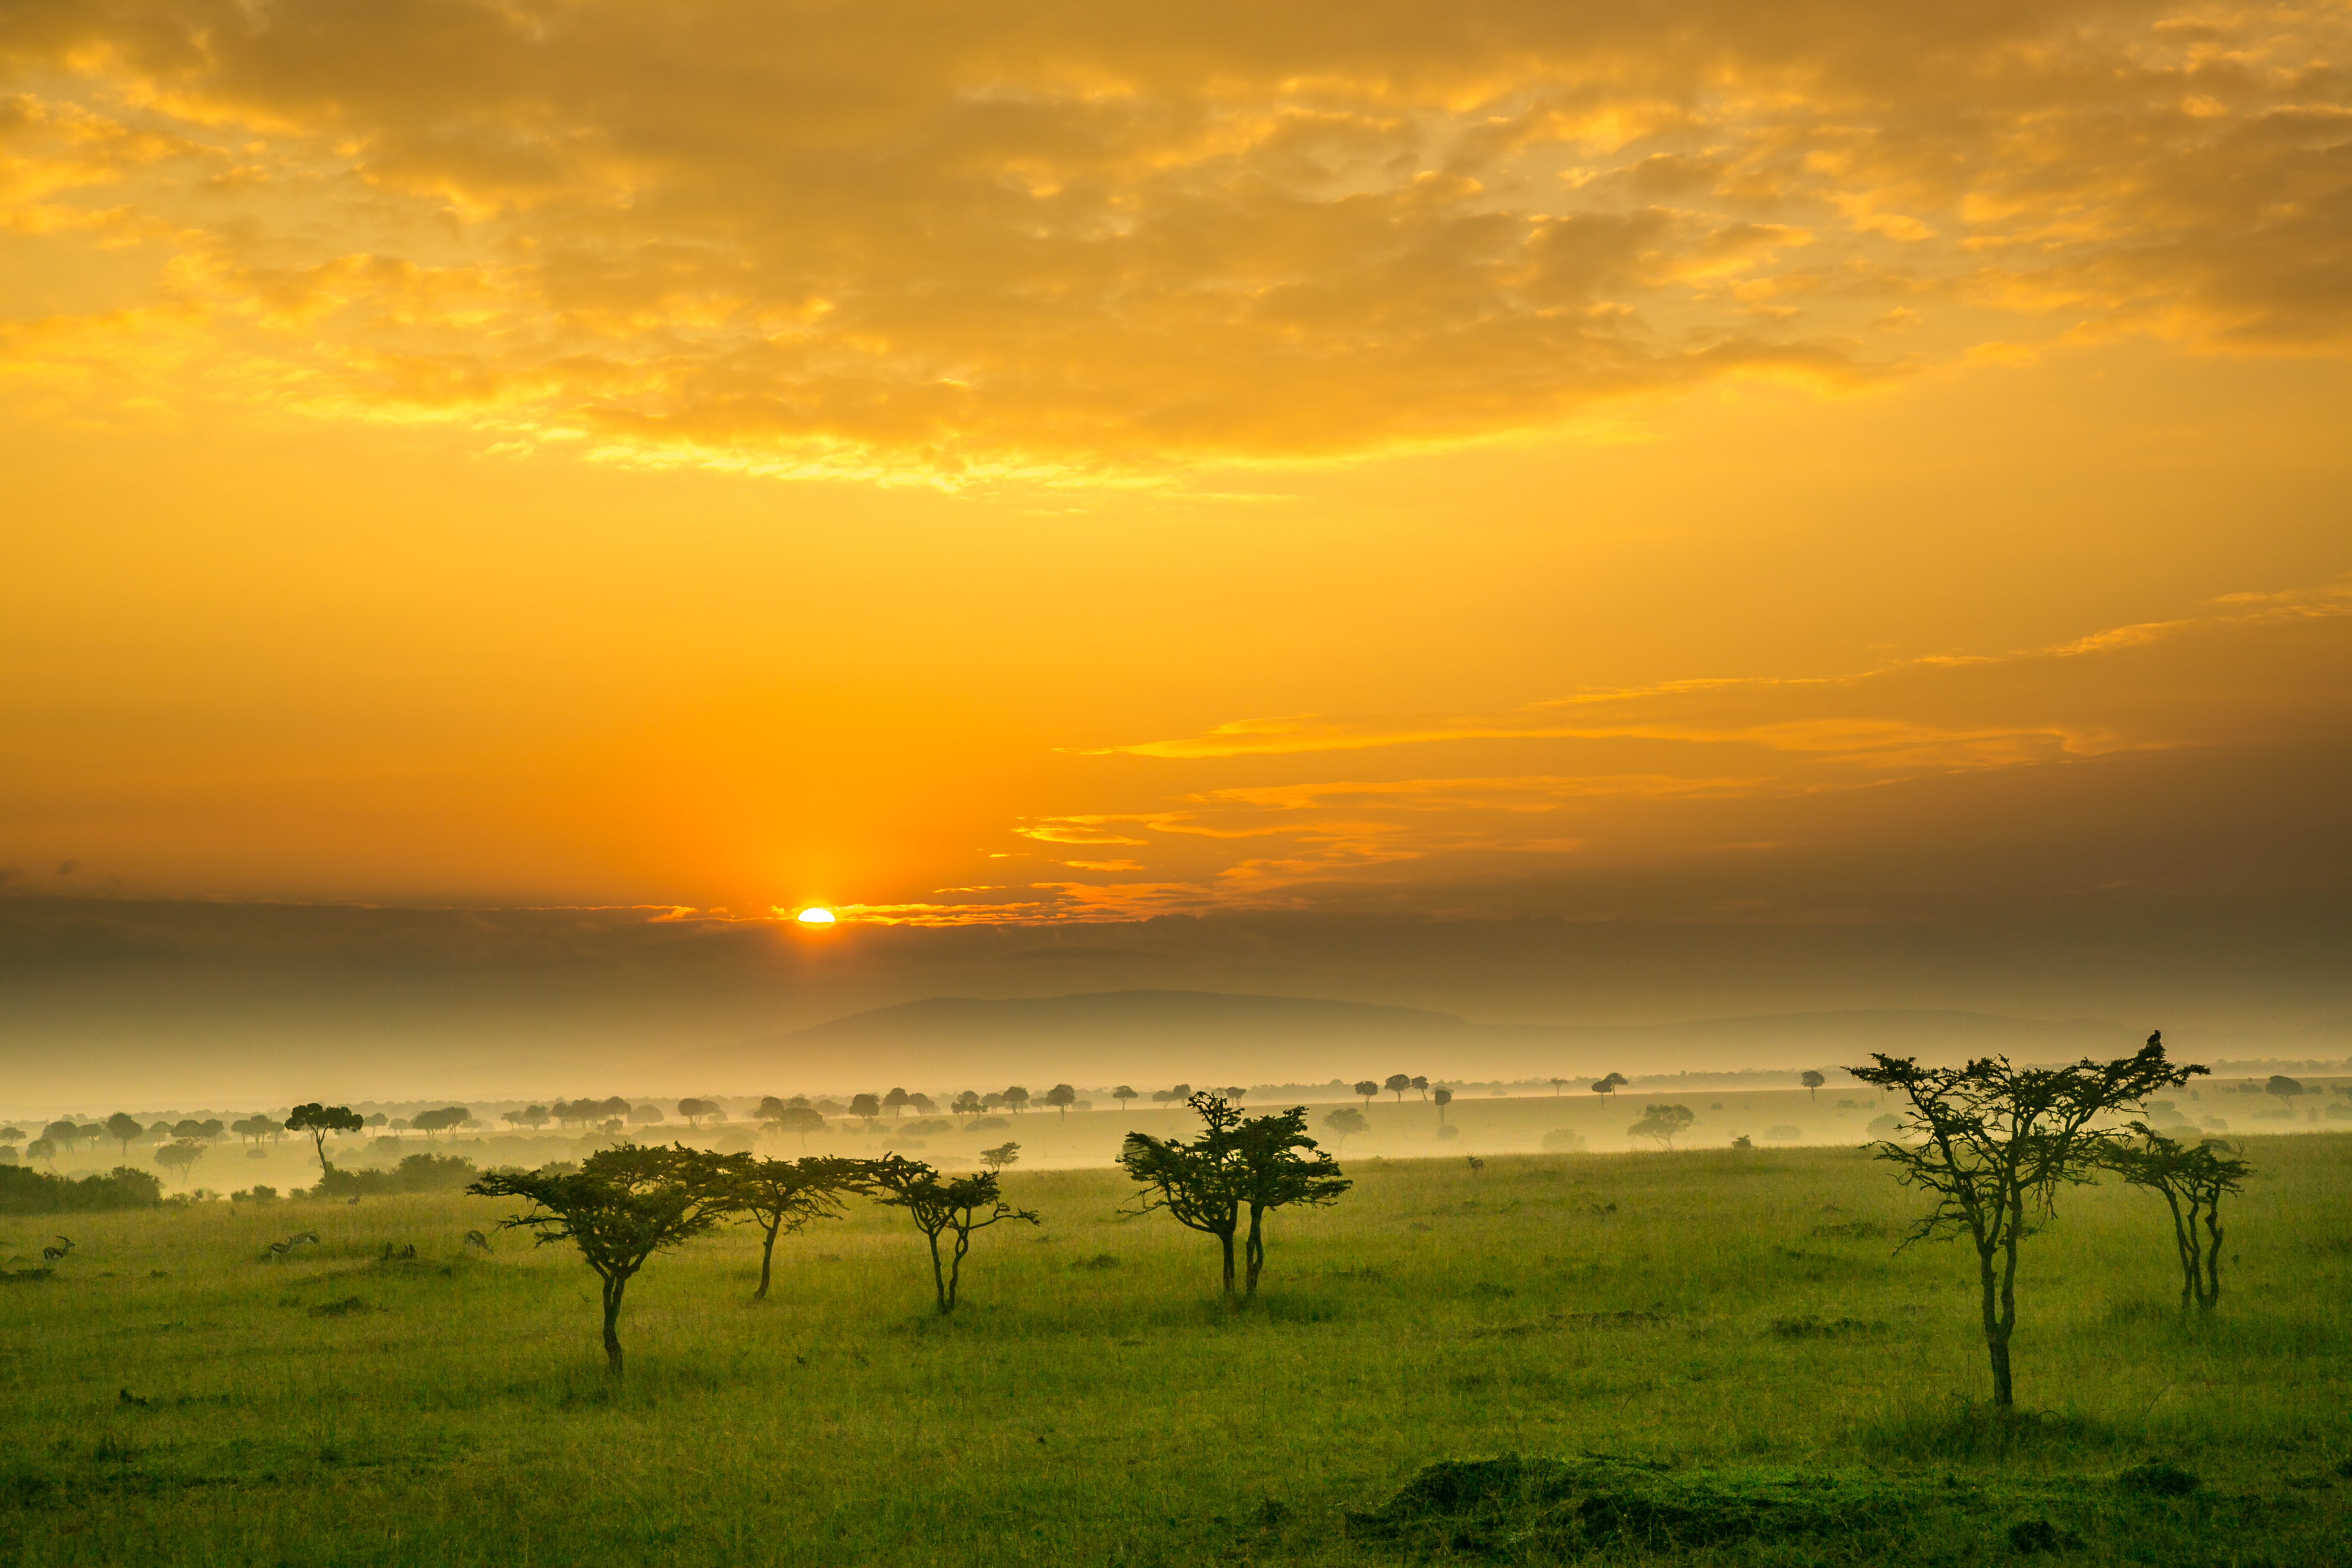 acacia-trees-and-spring-green-grass-at-sunrise-on-the-maasai-mara-savannah-kenya-africa417478128-1.jpeg